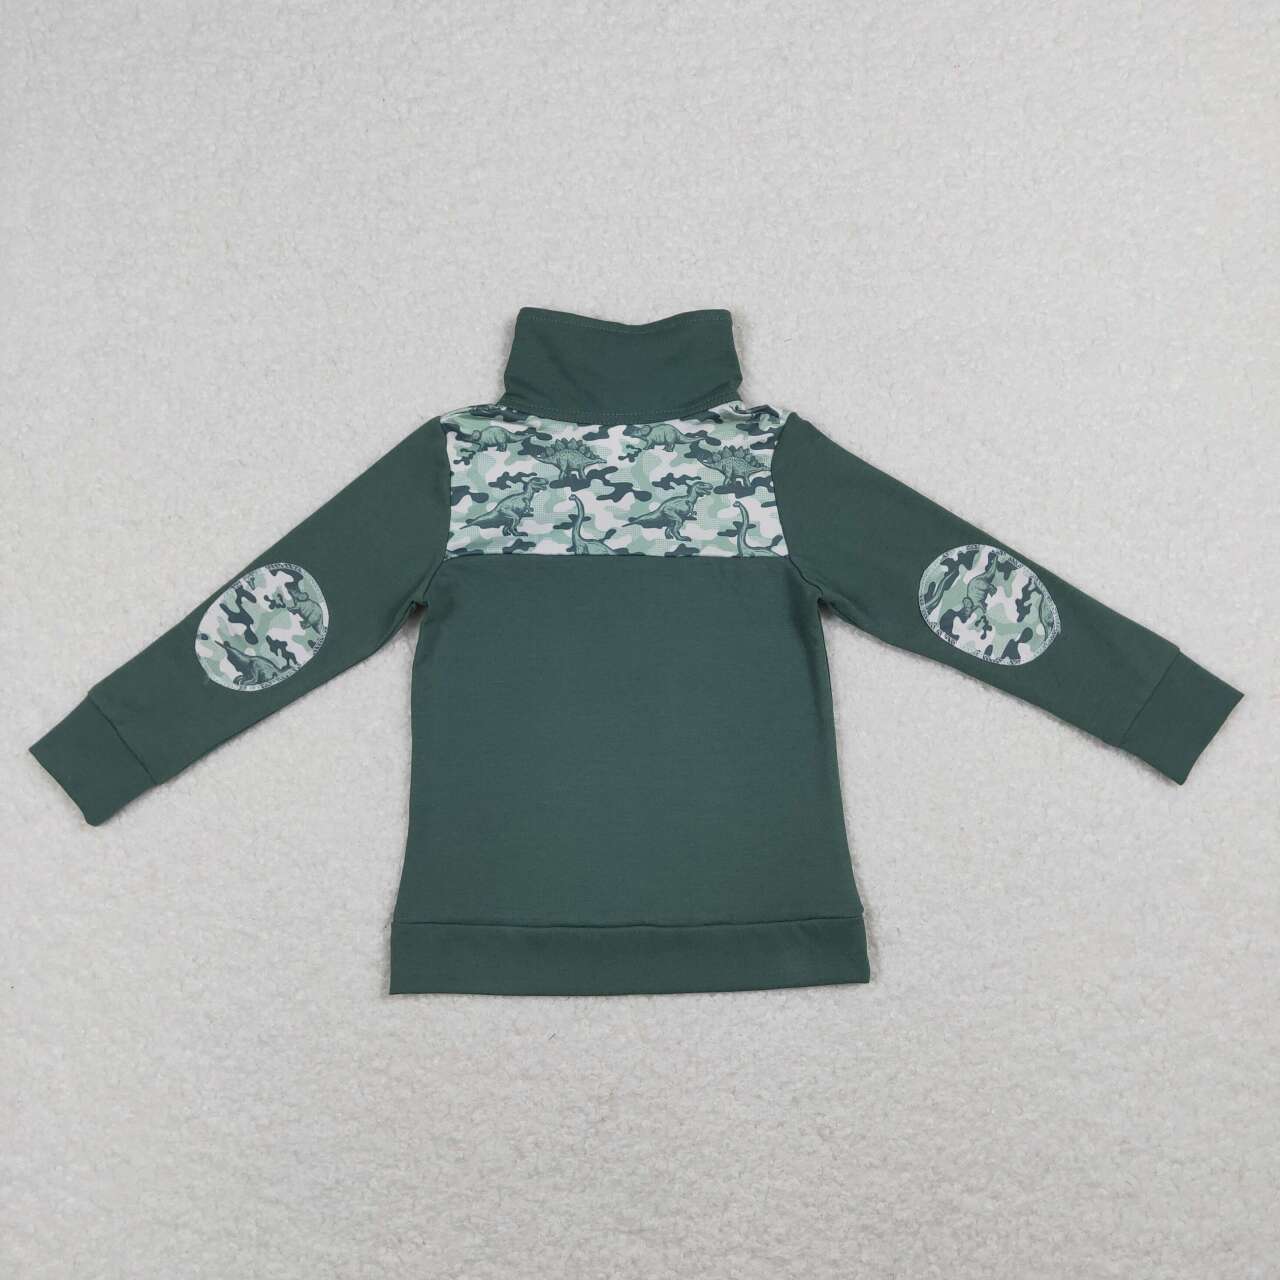 BT0381 Green Camo Dinosaur Print Long Sleeve Zipper Pullover Shirts Top